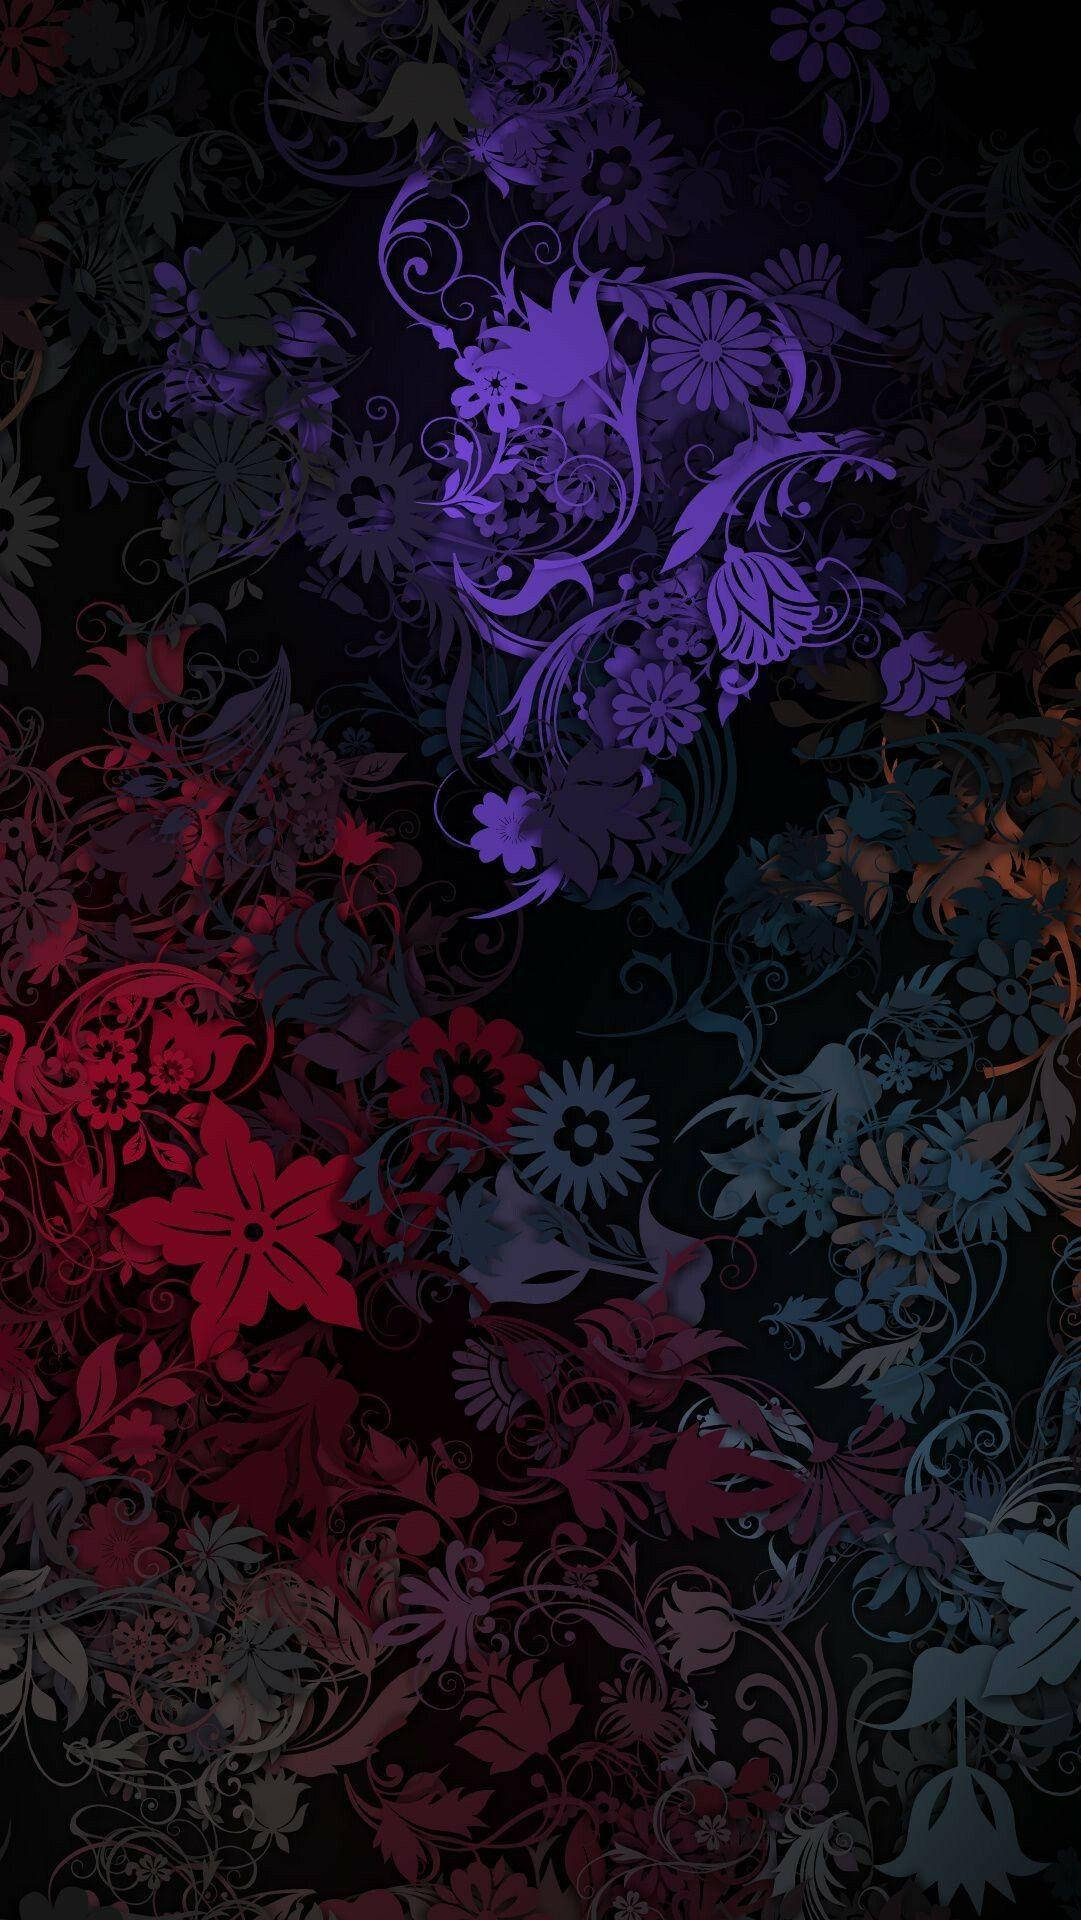 Dark HD Flowers Abstract Art Wallpaper